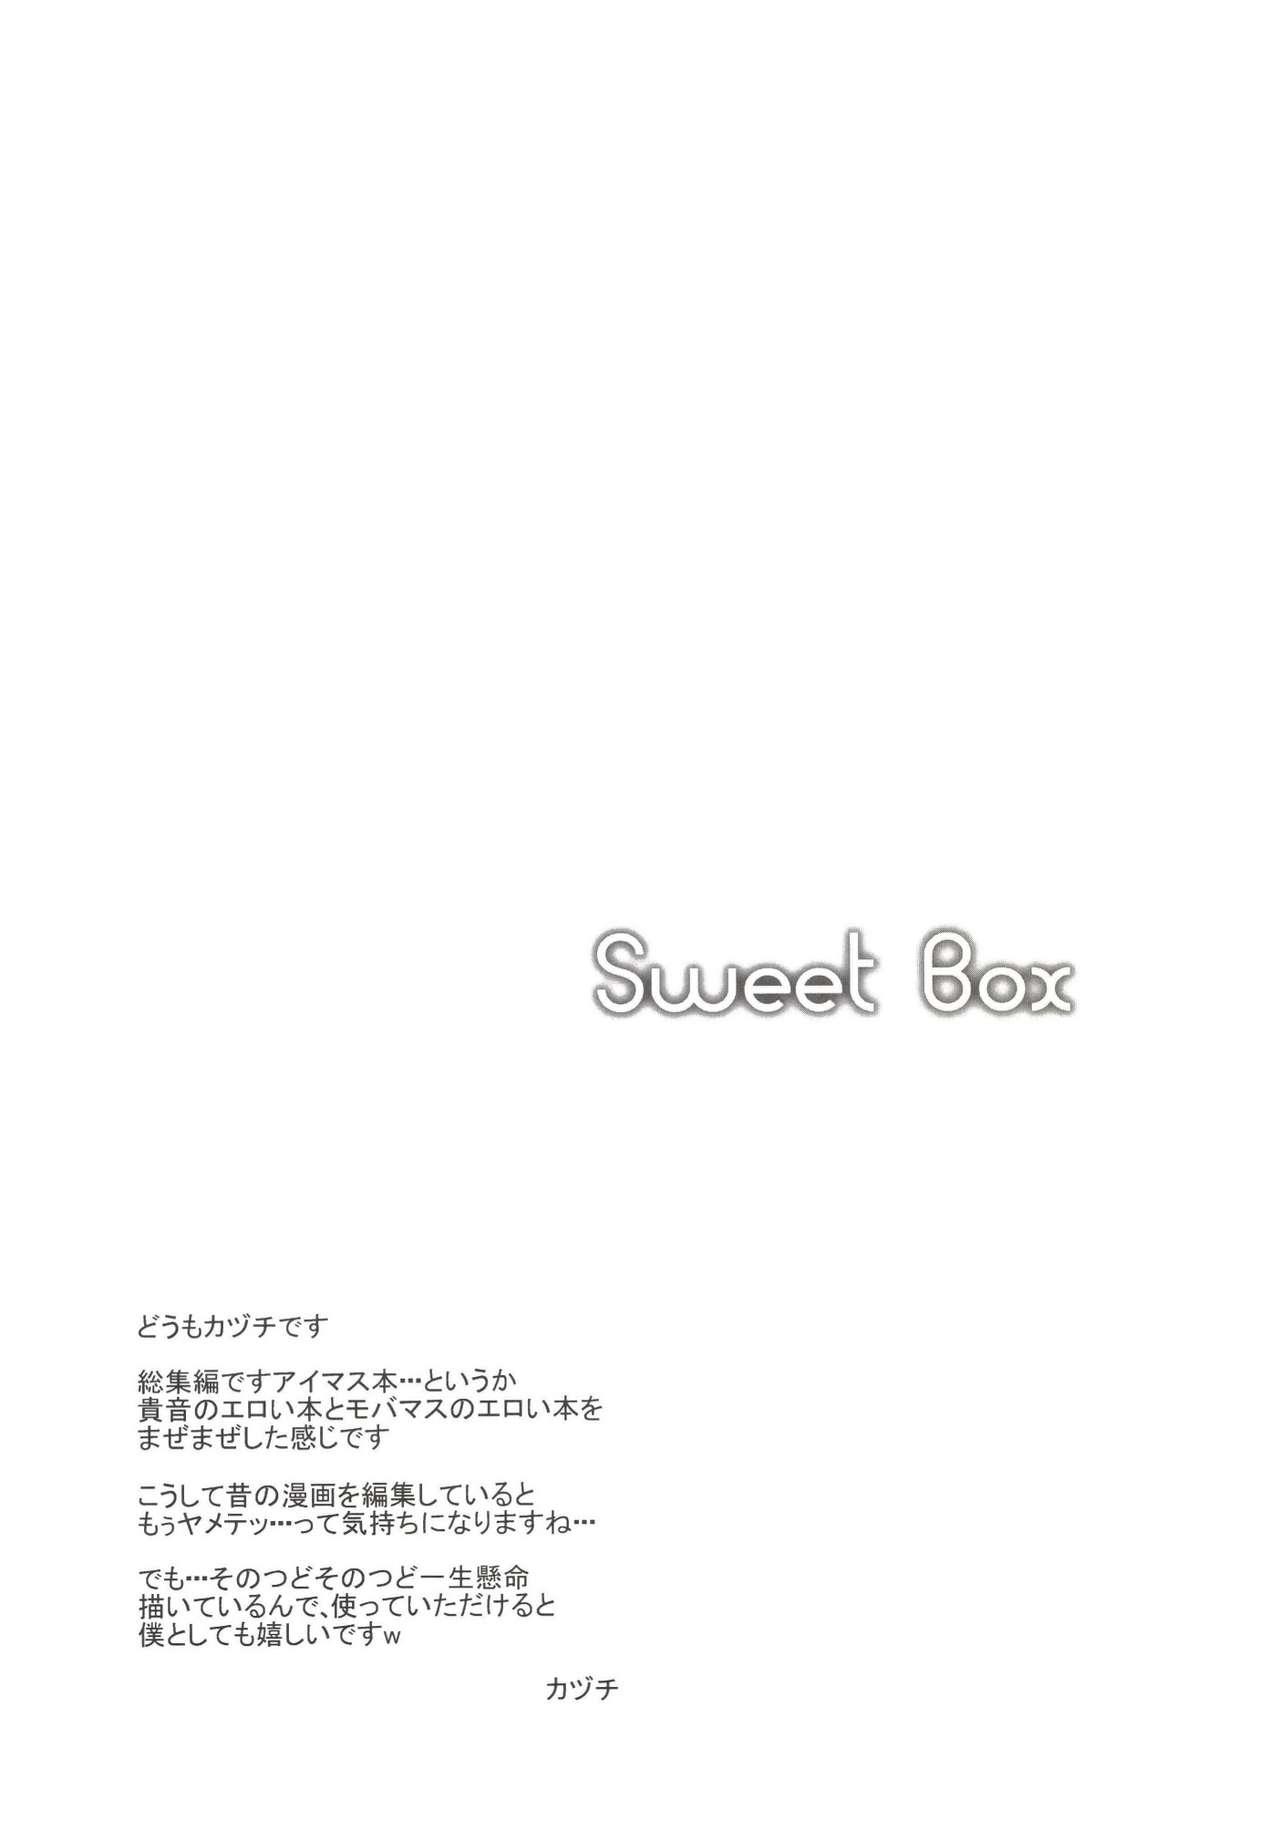 Sweet Box 3